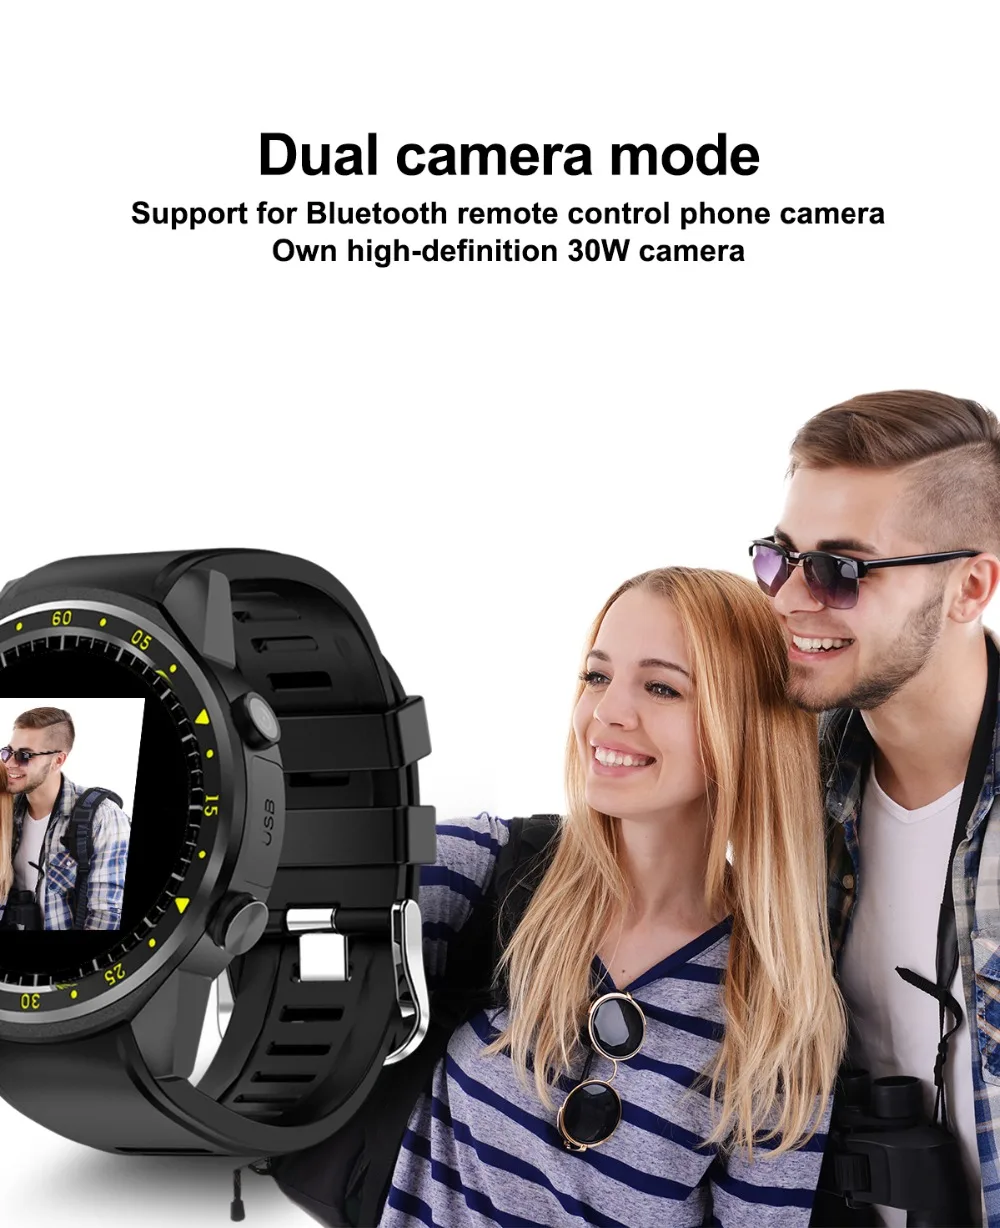 F1 смарт часы Bluetooth 4,0 1," Спортивные gps с камерой Поддержка Шагомер Smartwatch sim-карты наручные часы для IOS Android телефон